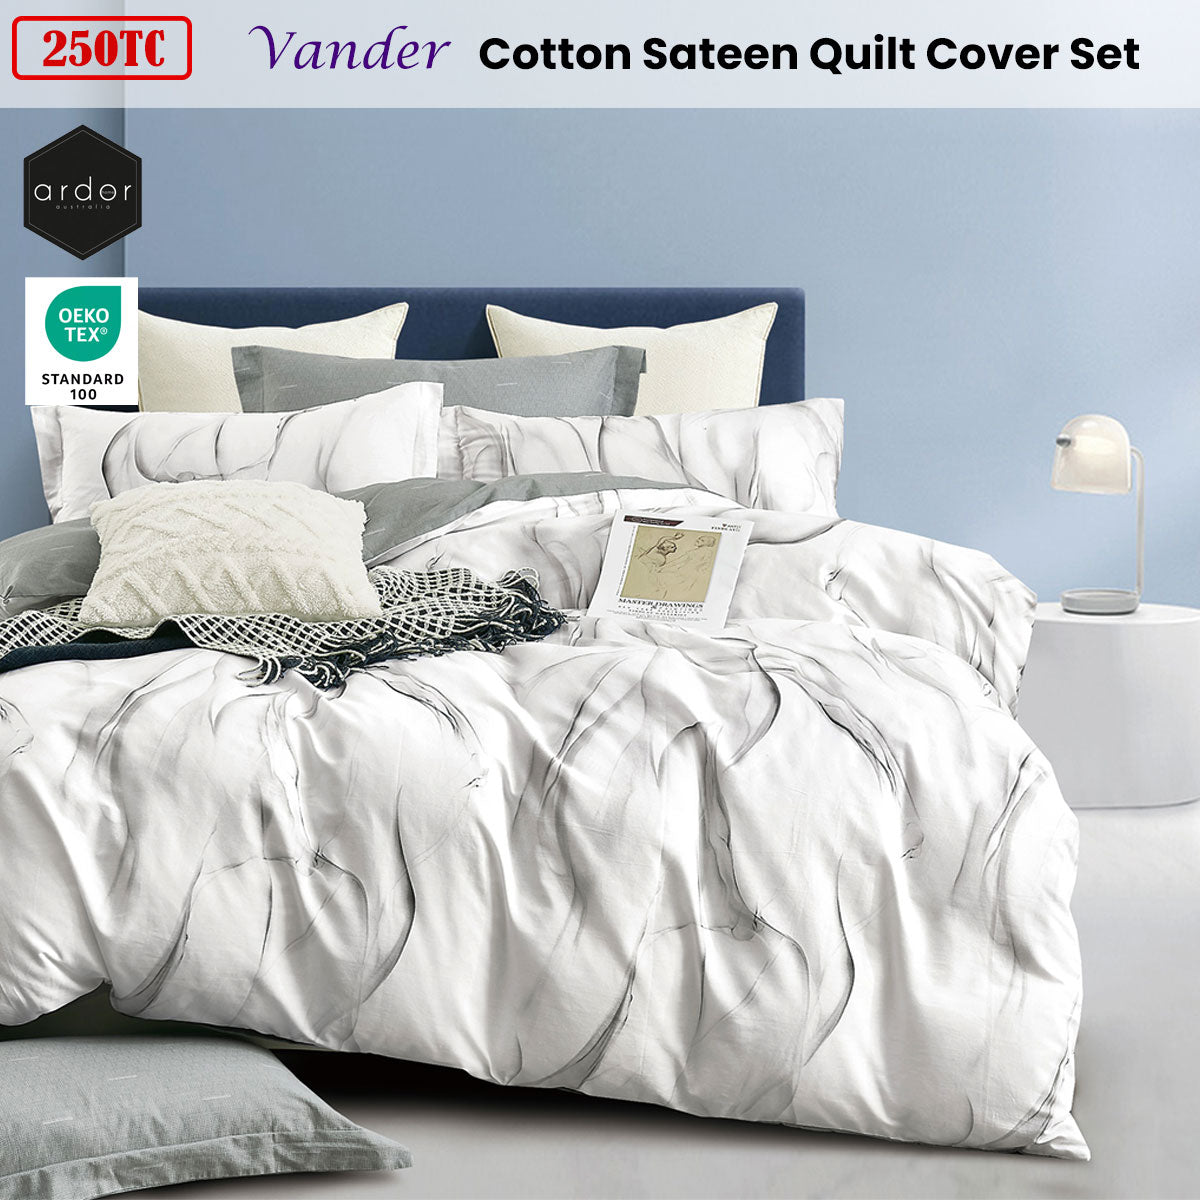 250TC Vander Cotton Sateen Quilt Cover Set Queen